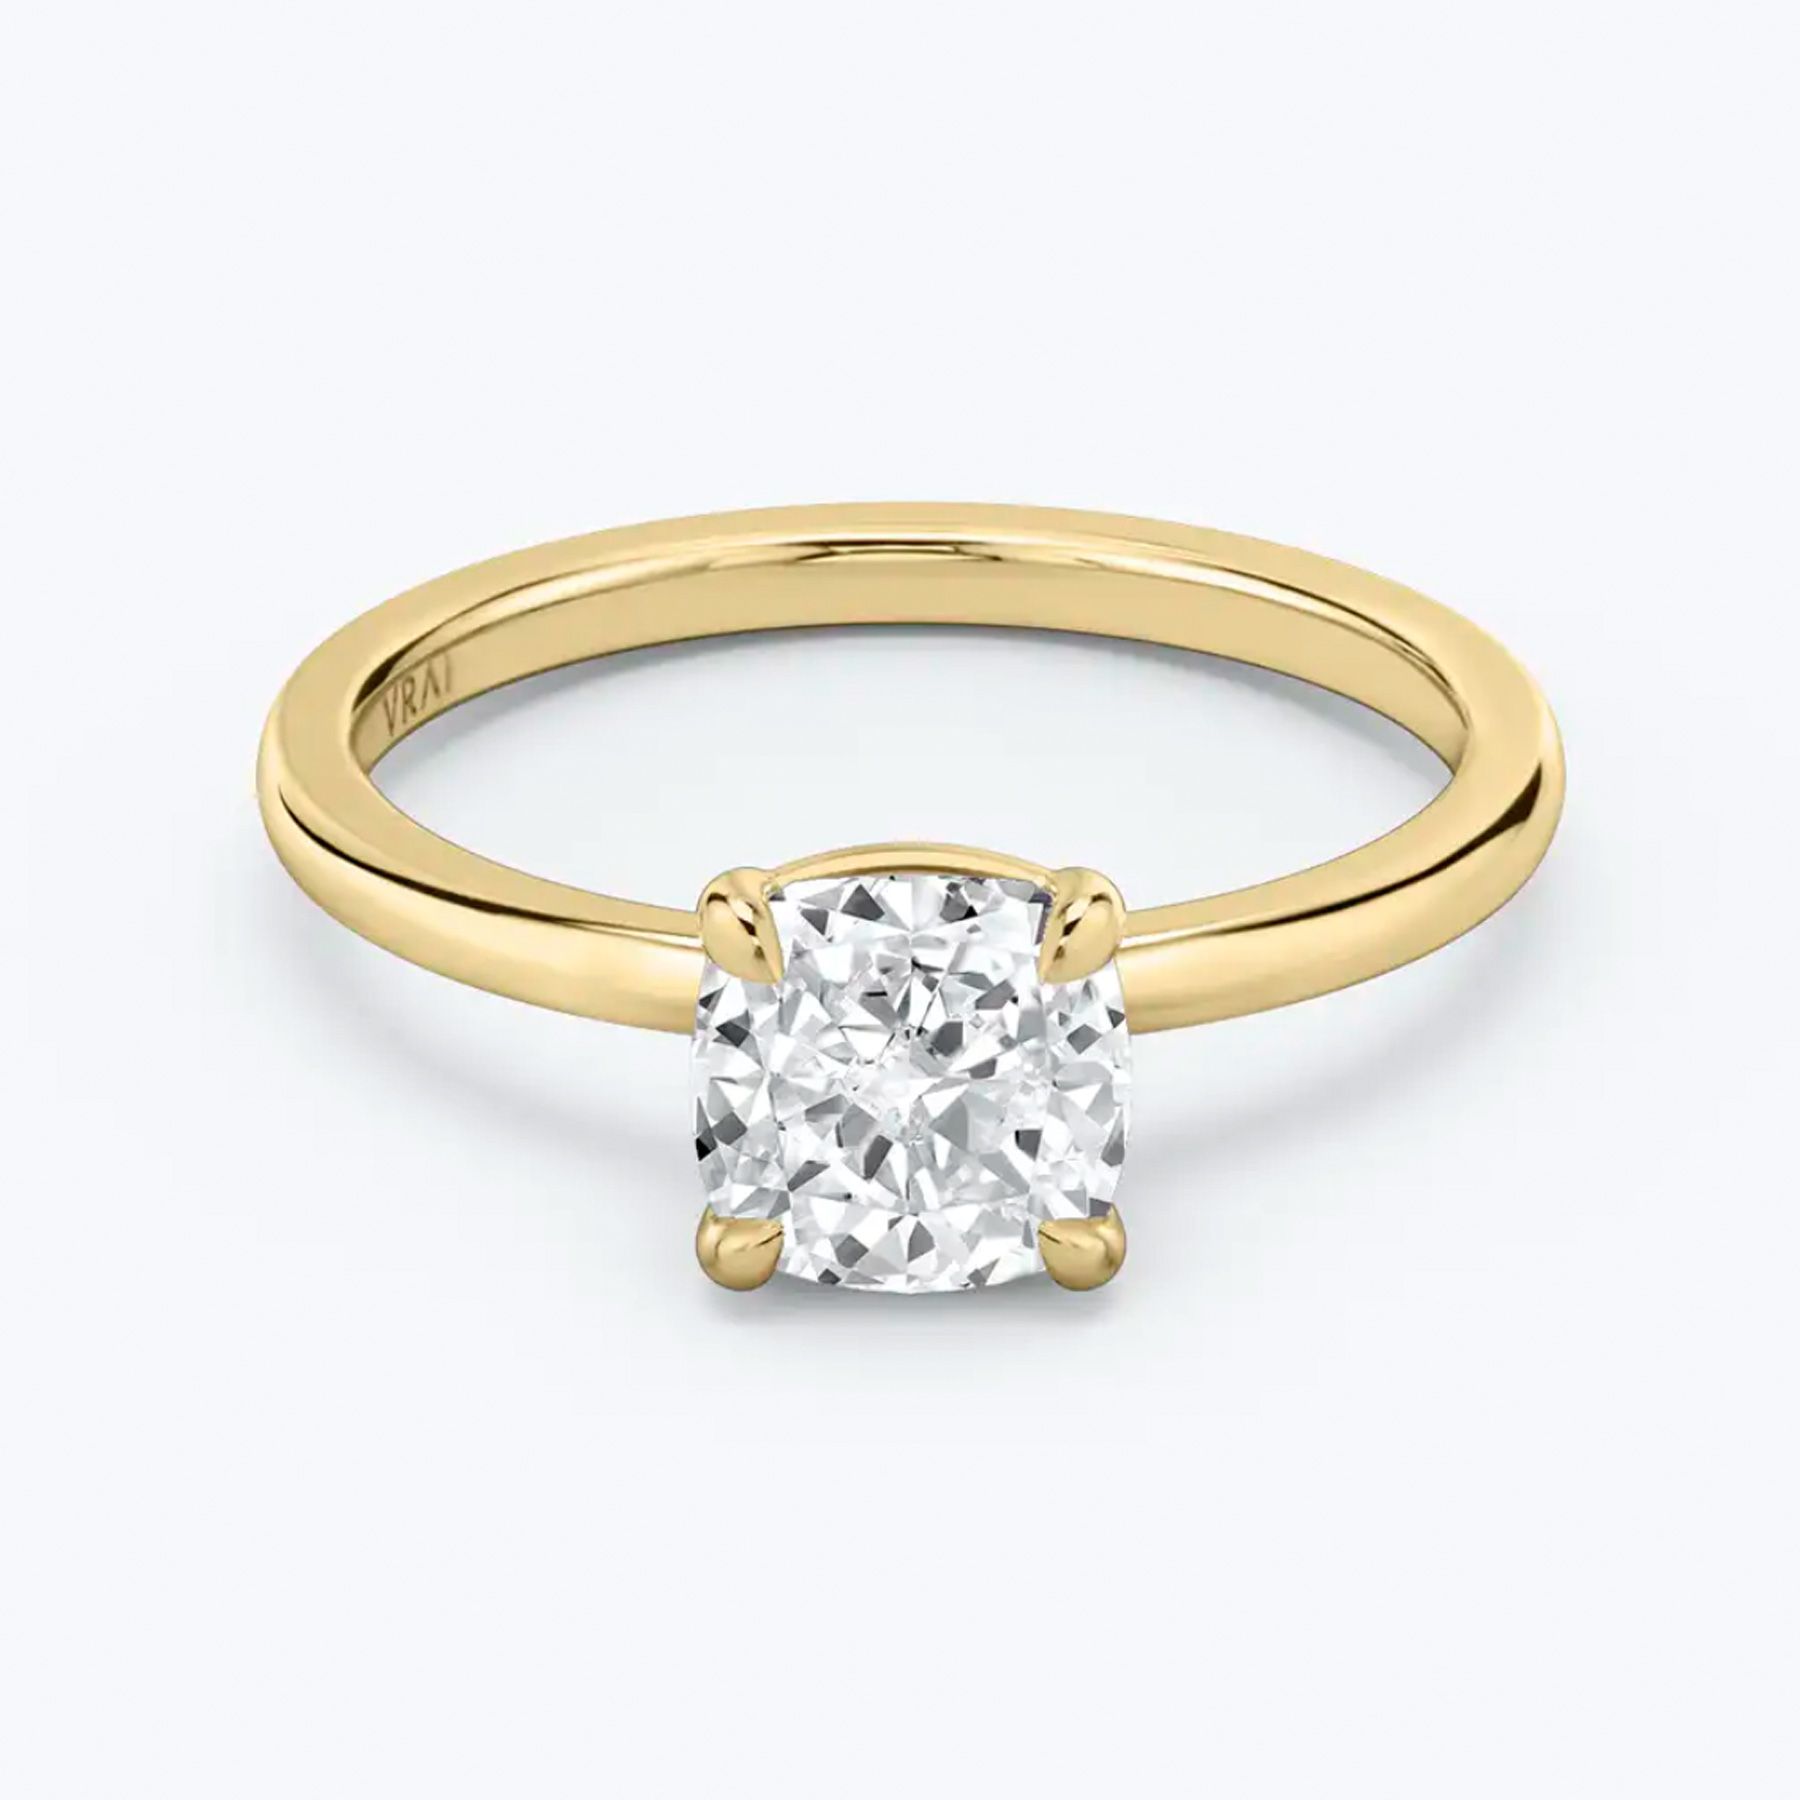 Trendy pierścionków zaręczynowych 2021: zrównoważone etyczne diamenty Vrai, żółte złoto i biały pierścionek z brylantem w szlifie poduszkowym